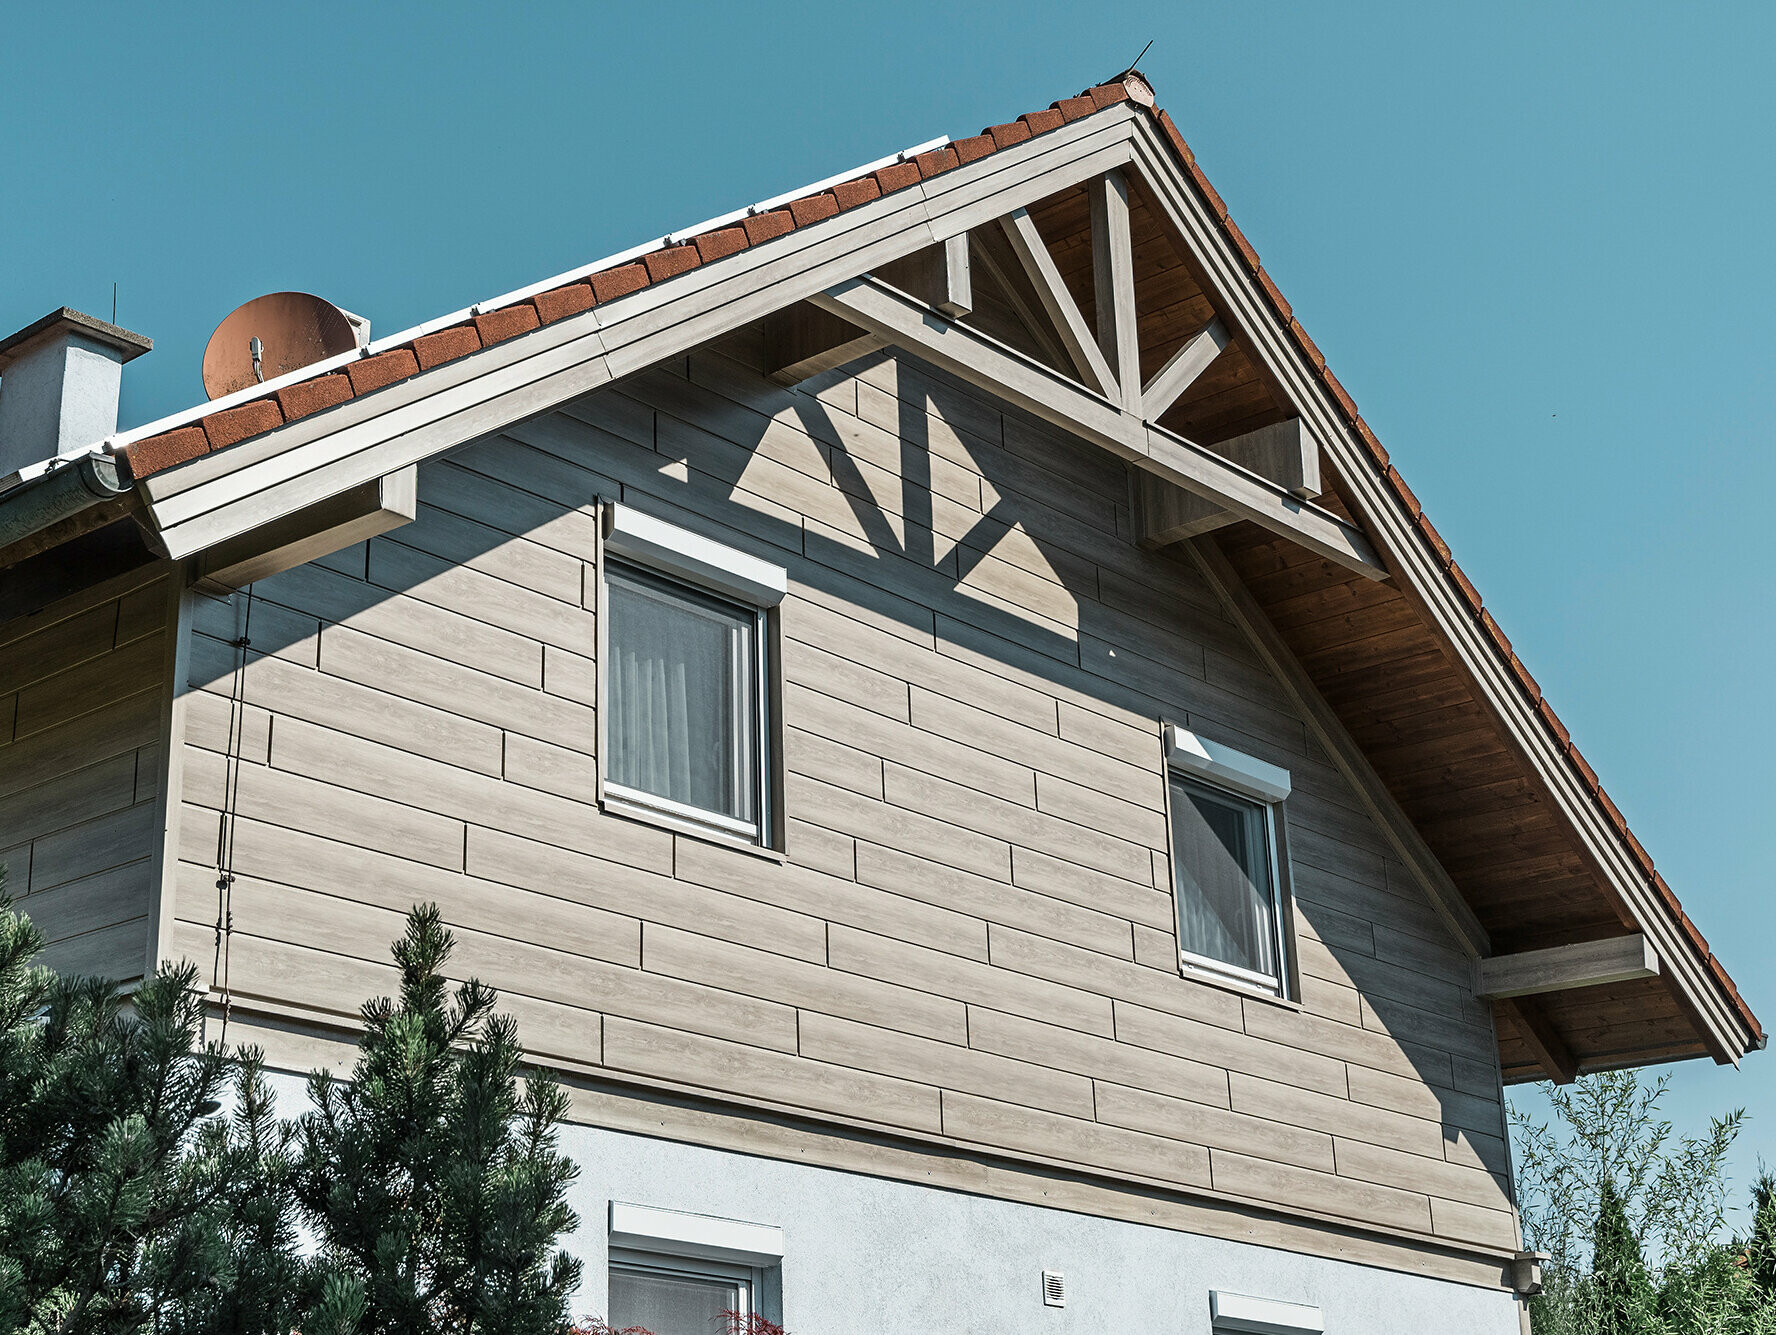 Einfamilienhaus in Landegg aus PREFA Sidings in Beige und Grau. Die verschiedenen Farbtöne der Sidings zeigen die Flexibilität bei der Farbgestaltung und verleihen dem Gebäude eine moderne und stilvolle Optik.